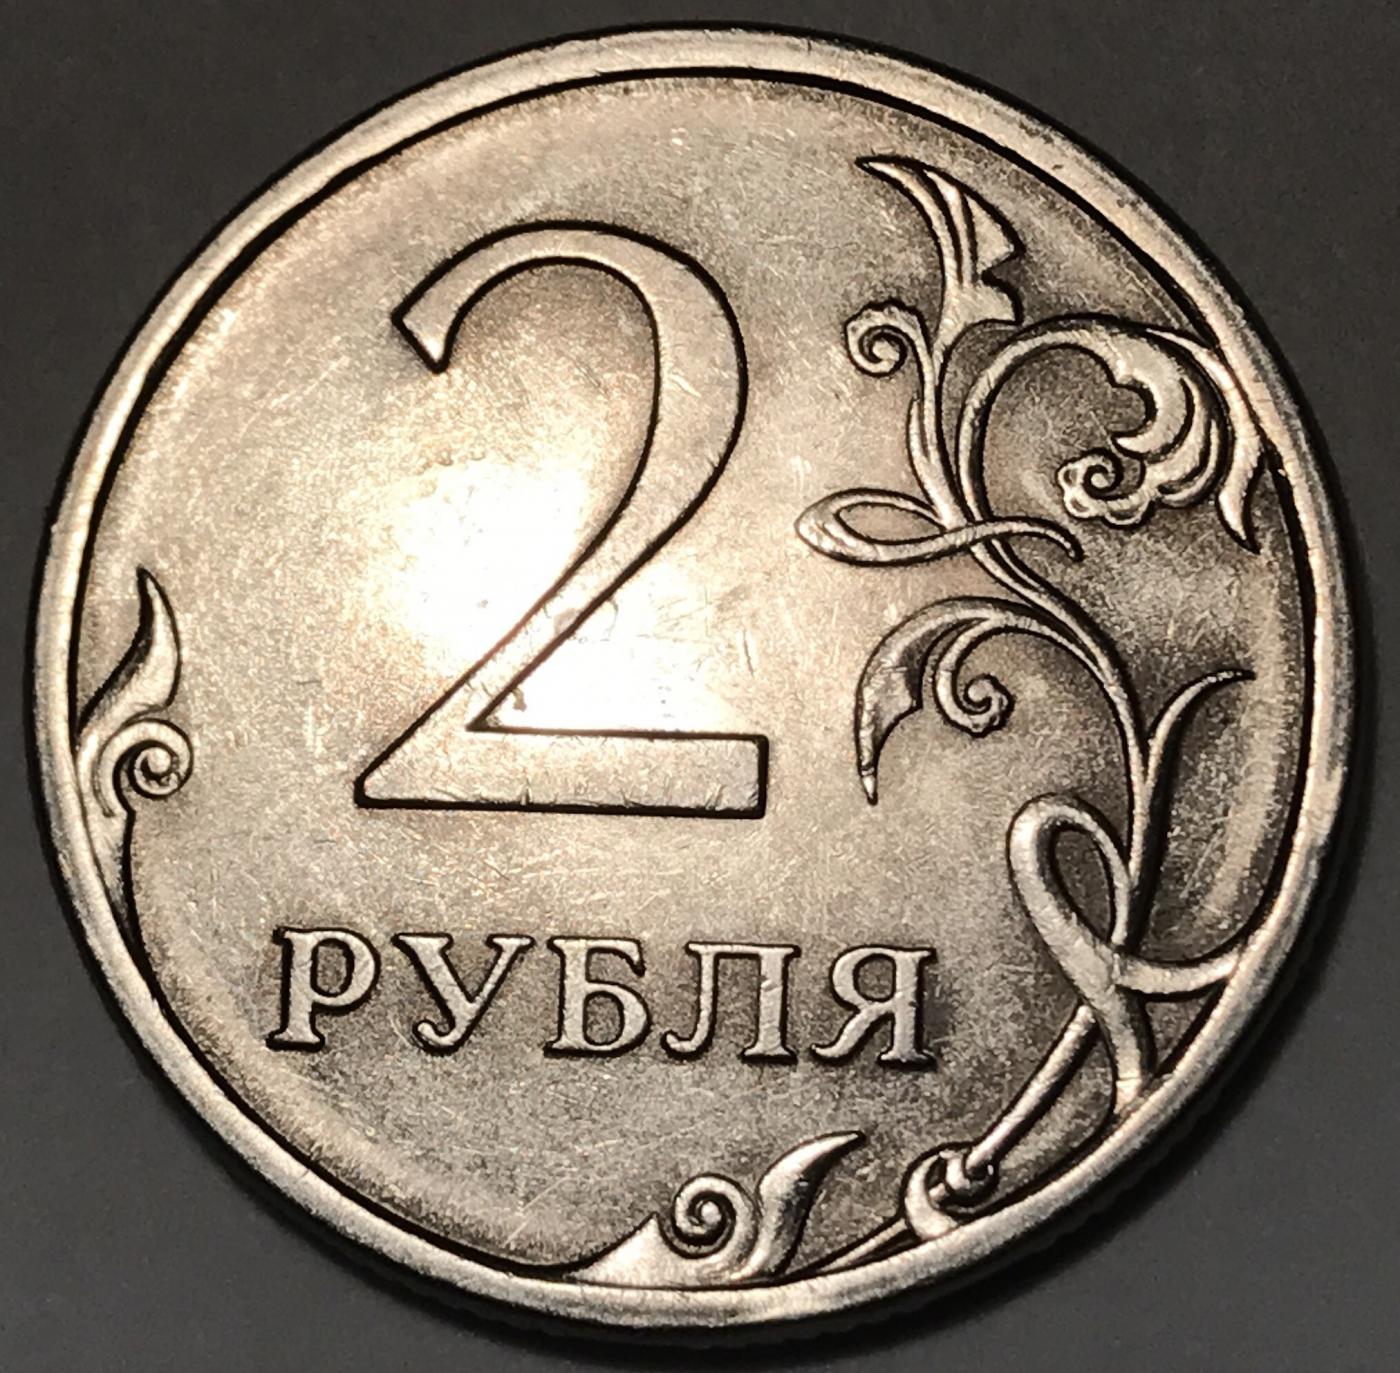 80 рублей 90. 2 Рубля СПМД. Монеты 2 рубля 2000 года, буквы СПМД. Монета 2 рубля 2021 года. Бракованные 2 рубля.